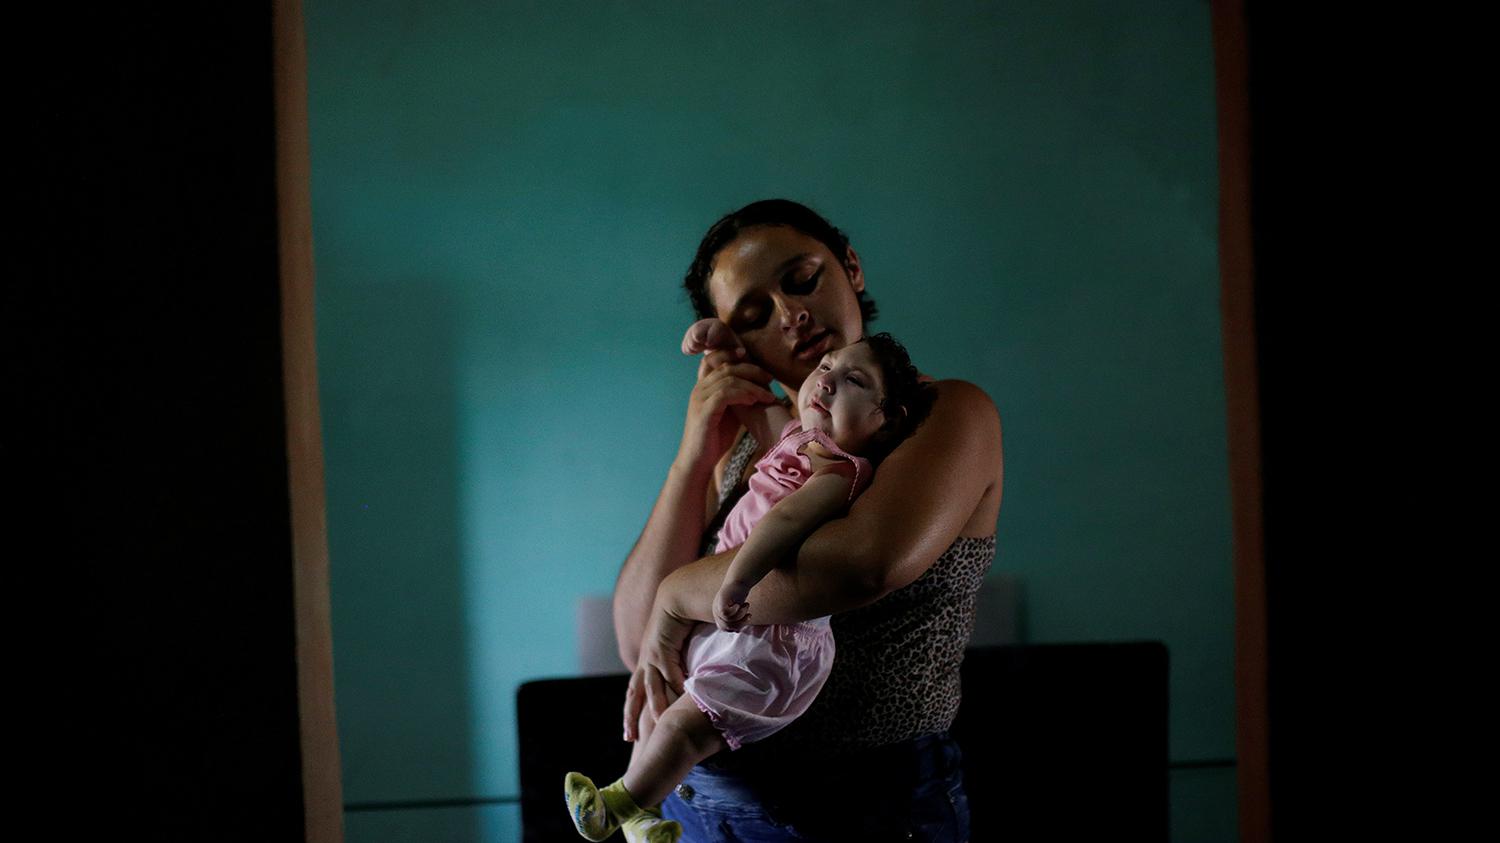 Raquel, 25, com sua filha Heloisa, no município de Areia, no estado da Paraíba, no Brasil. Raquel deu à luz filhas gêmeas com síndrome de Zika em abril de 2016. “Eu quero dar o melhor de mim para minhas filhas”, disse ela em entrevista à Human Rights Watc